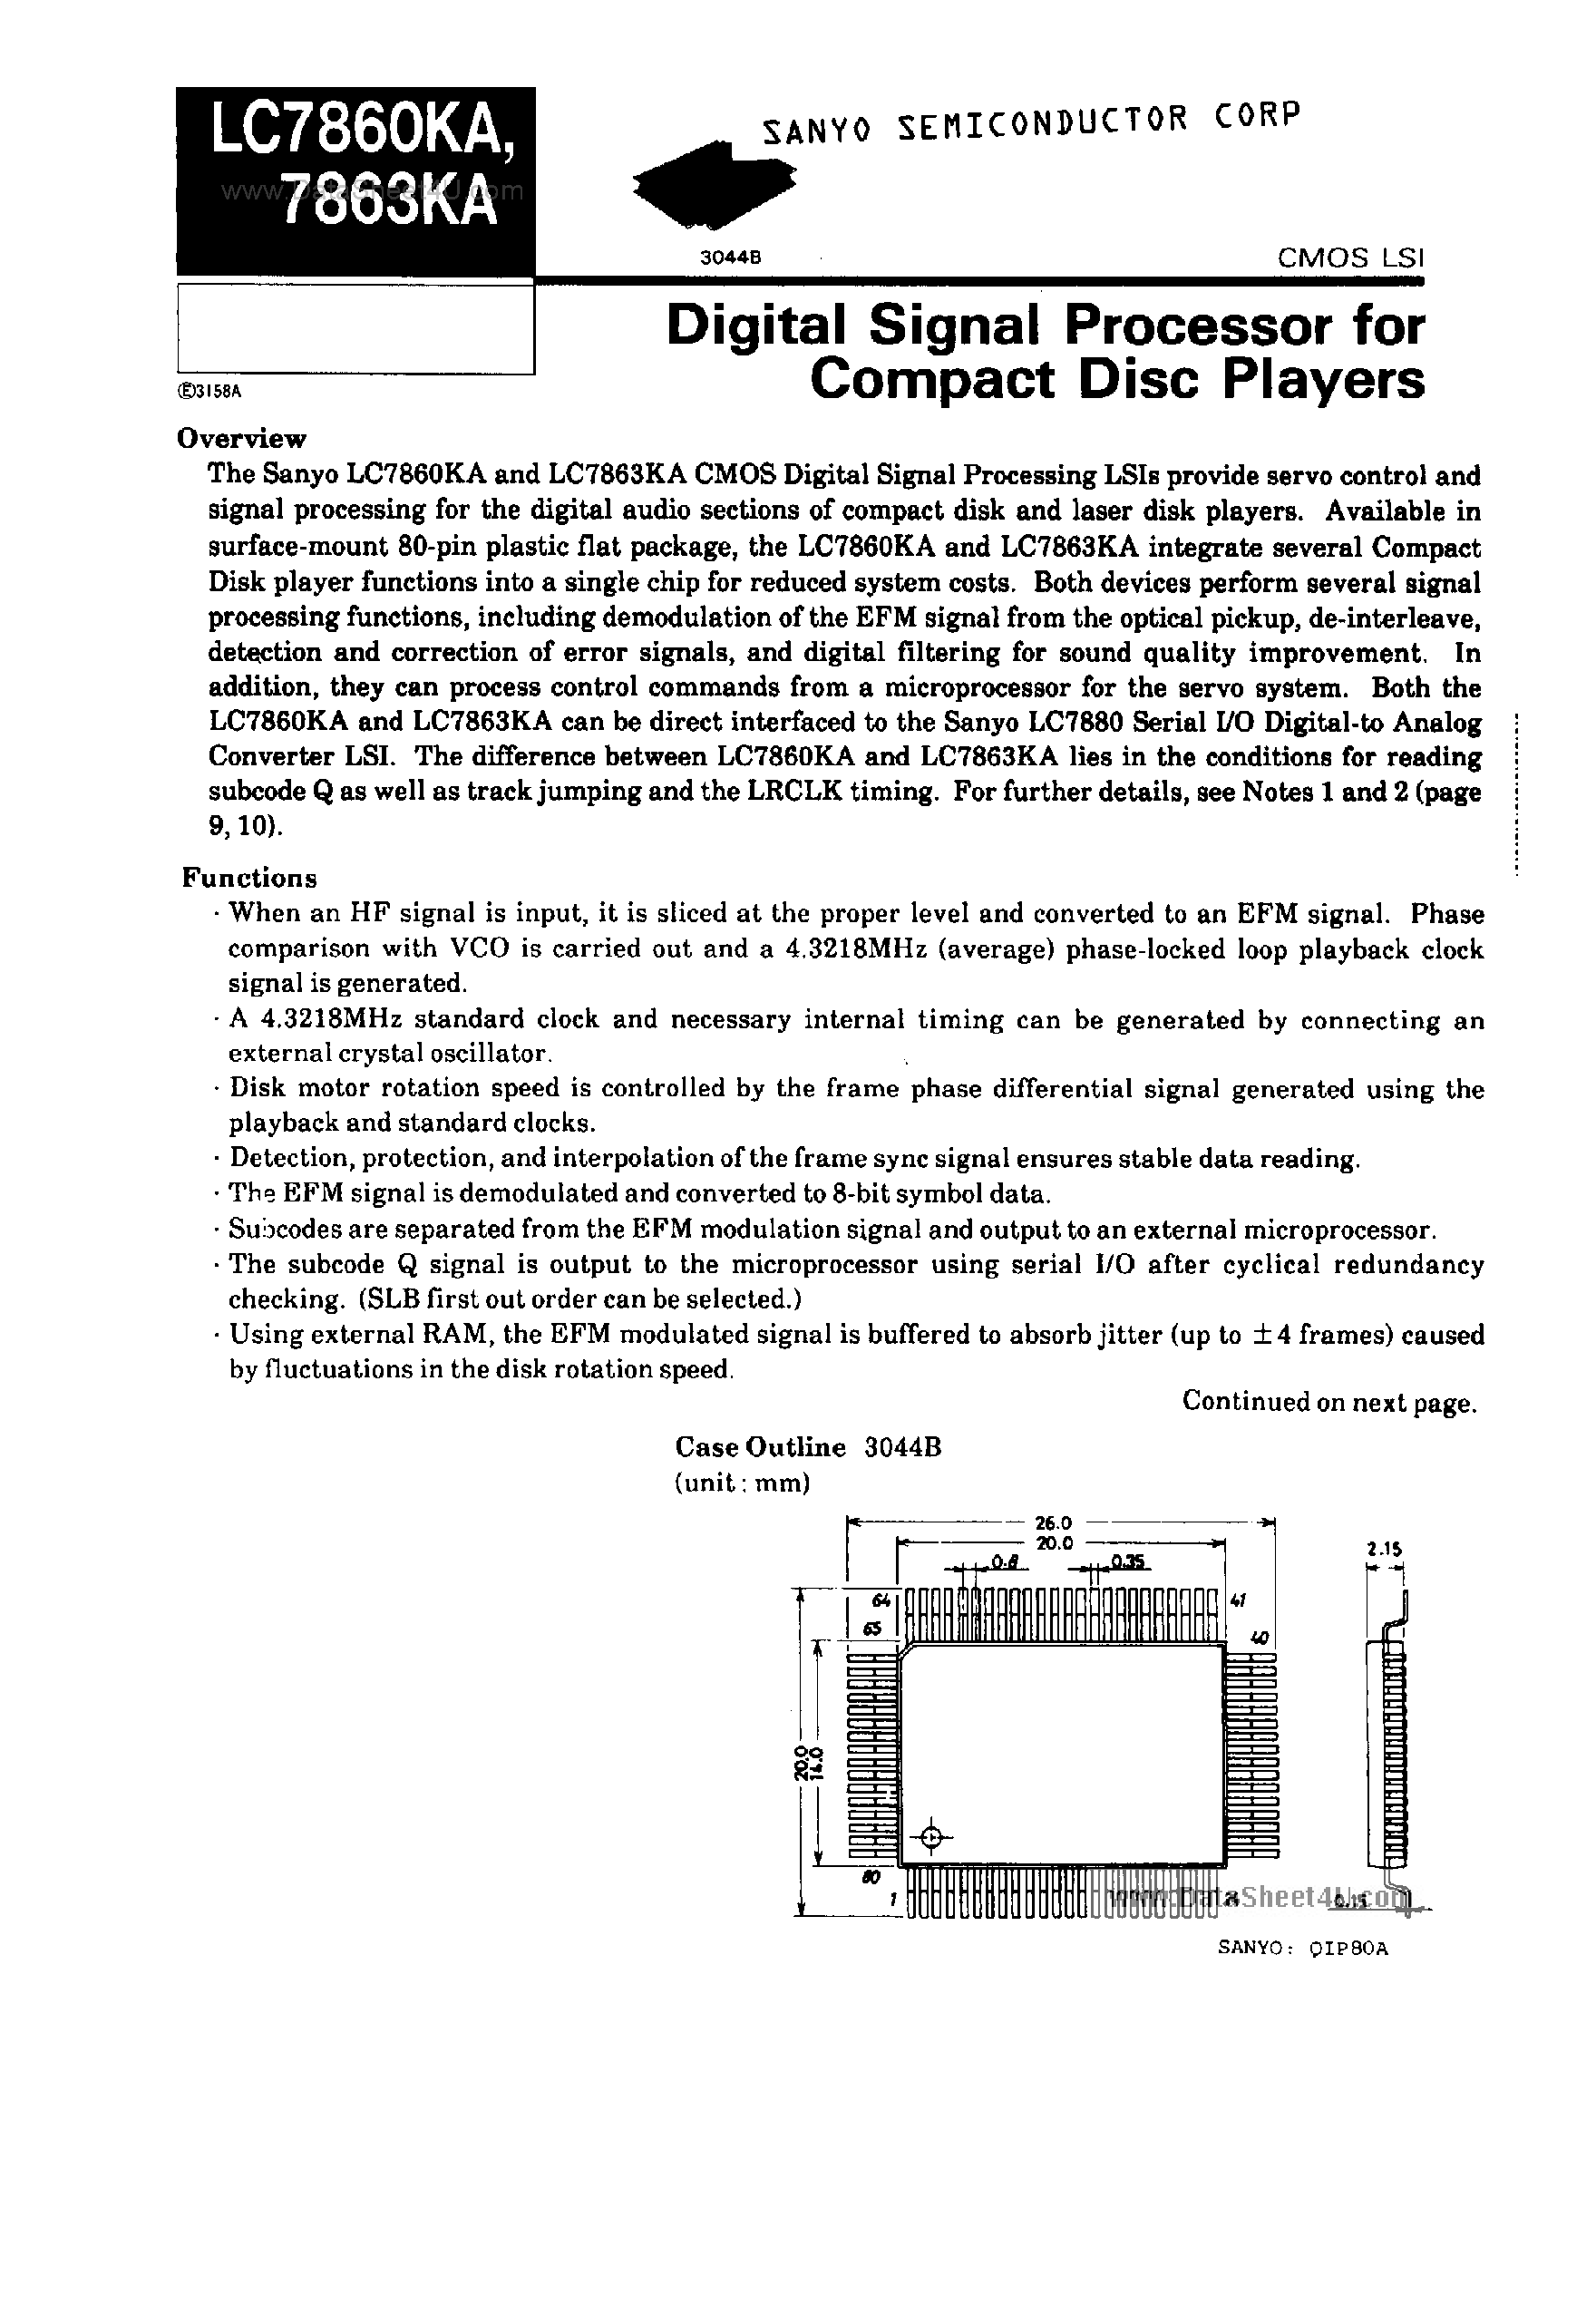 Datasheet LC7860KA - (LC7860KA / LC7863KA) DIGITAL SIGNAL PROCESSOR FOR COMPACT DISC PLAYERS page 1